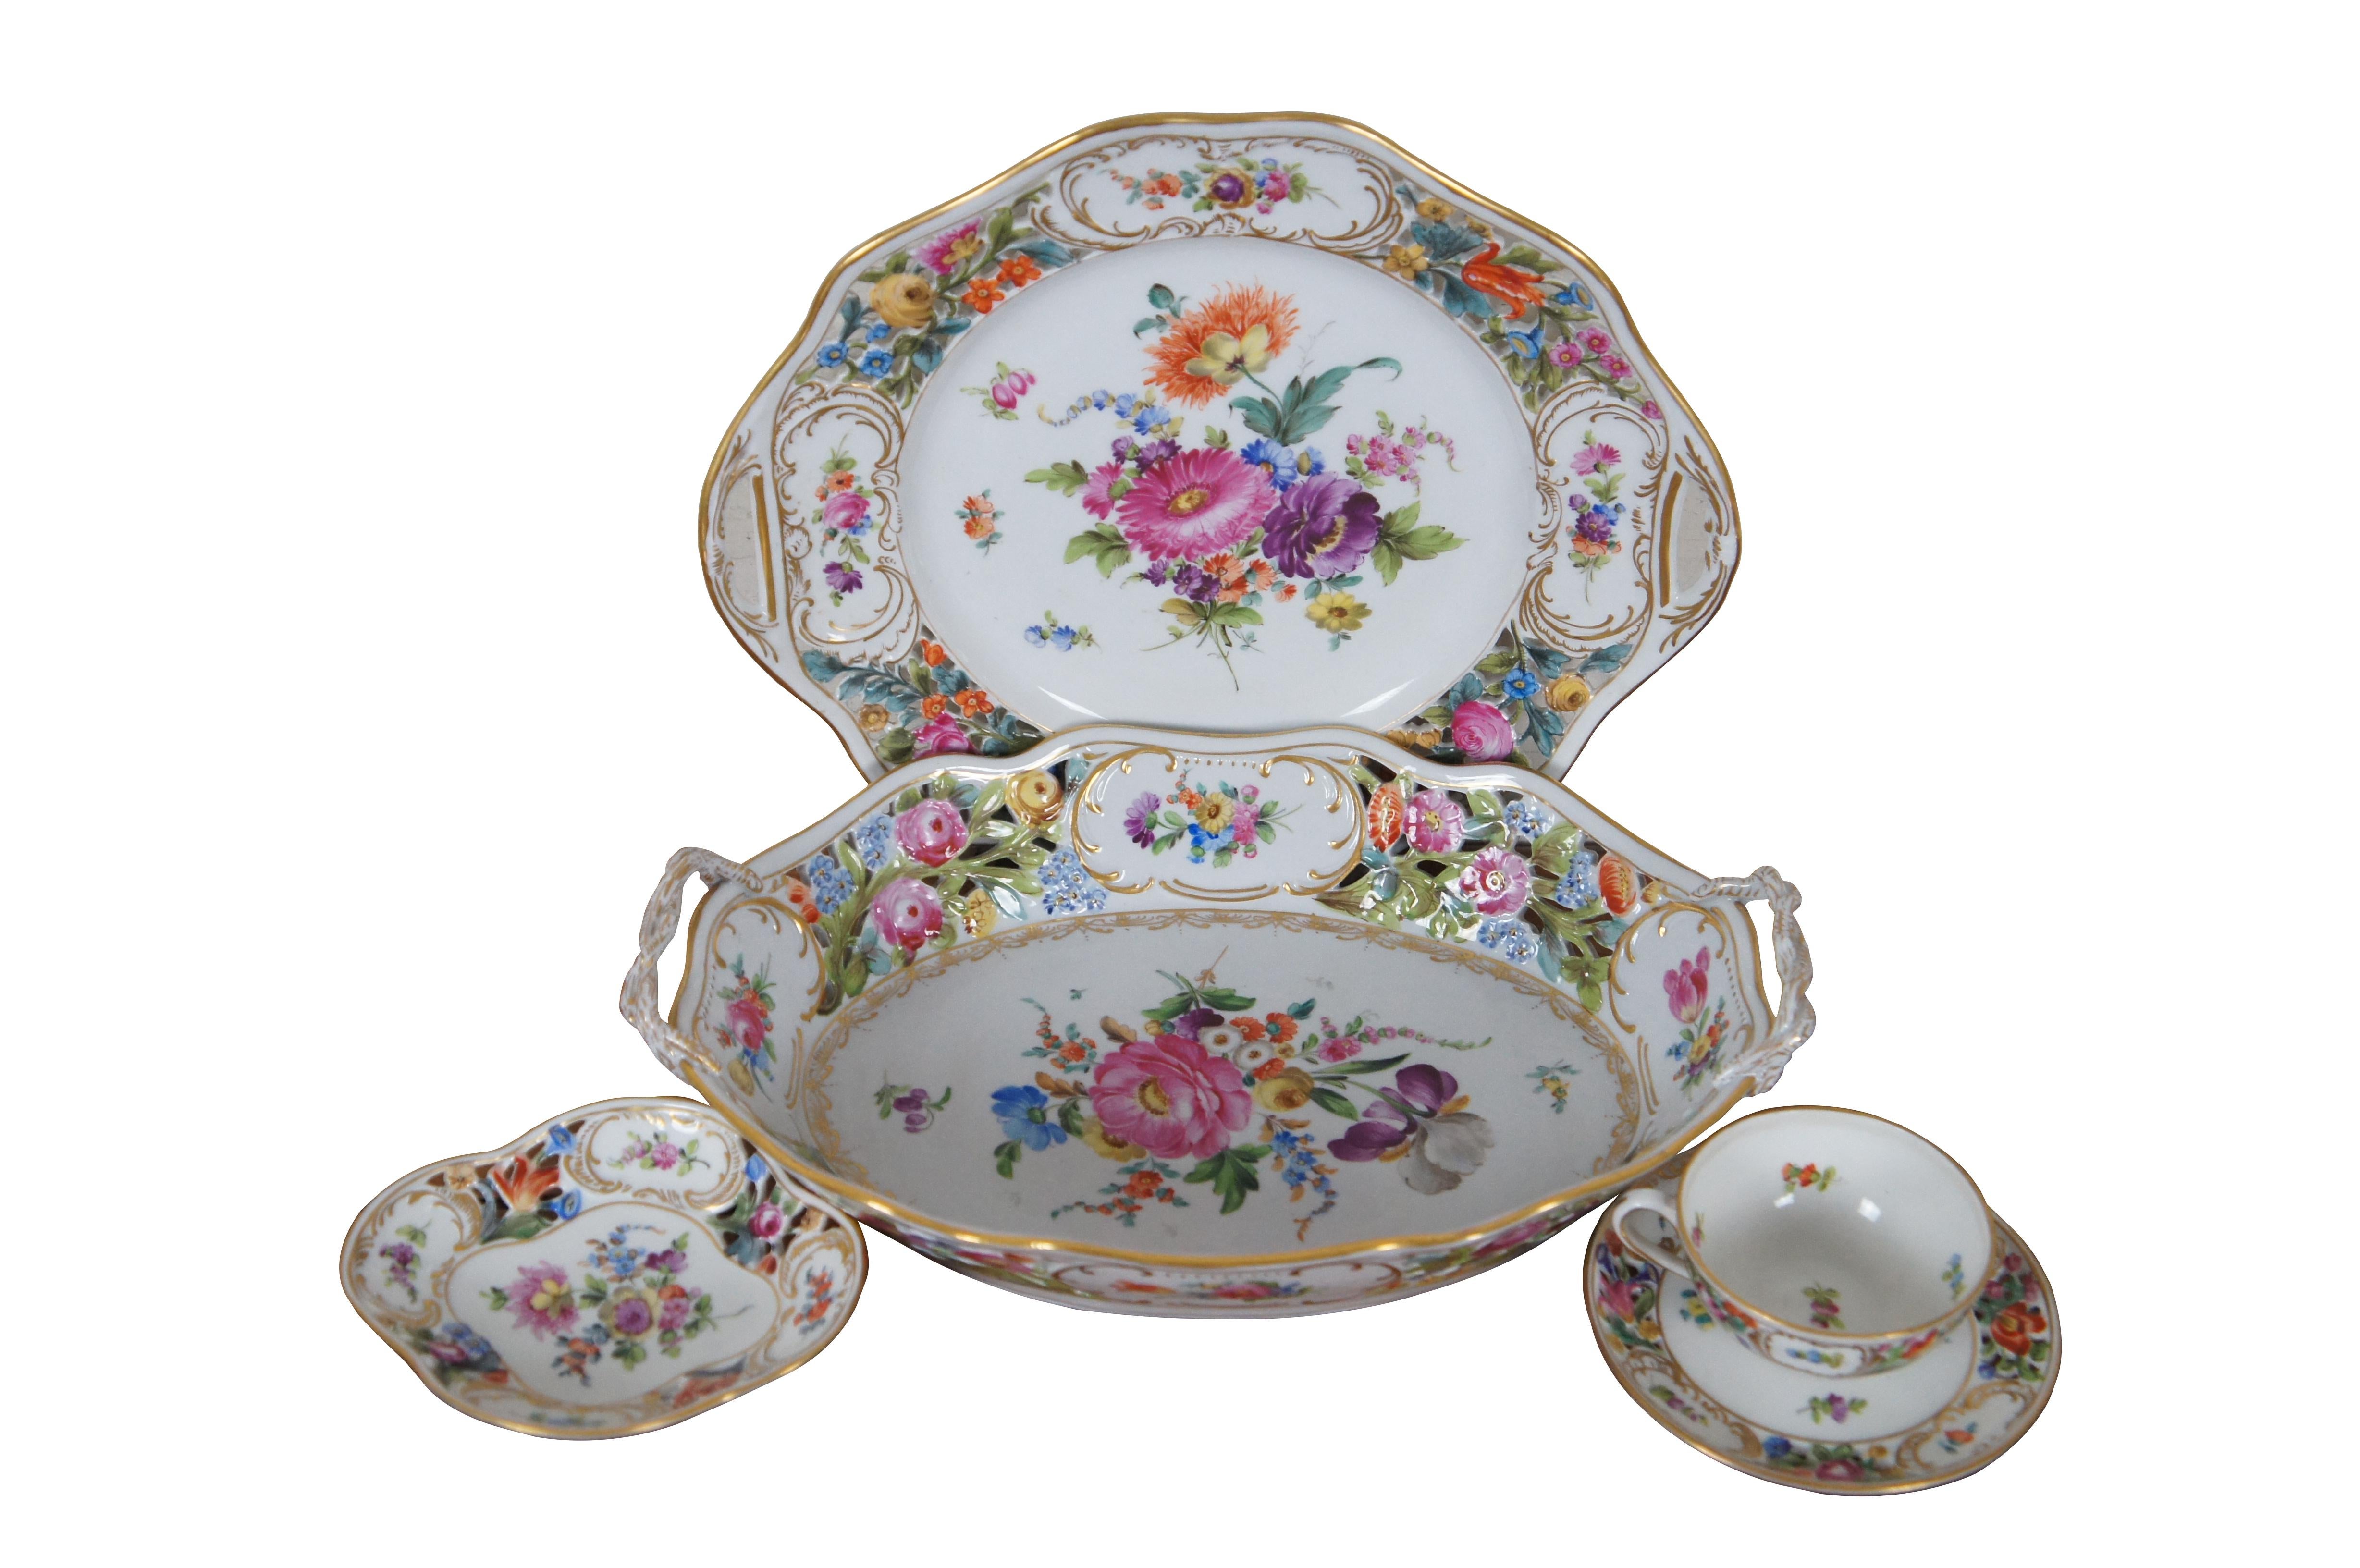 Service ancien en porcelaine florale allemande de Dresde Carl Thieme.  Le lot comprend un plat de service ovale réticulé et percé, un plat / assiette à anses, un petit plat ovale et une tasse à thé avec soucoupe.

